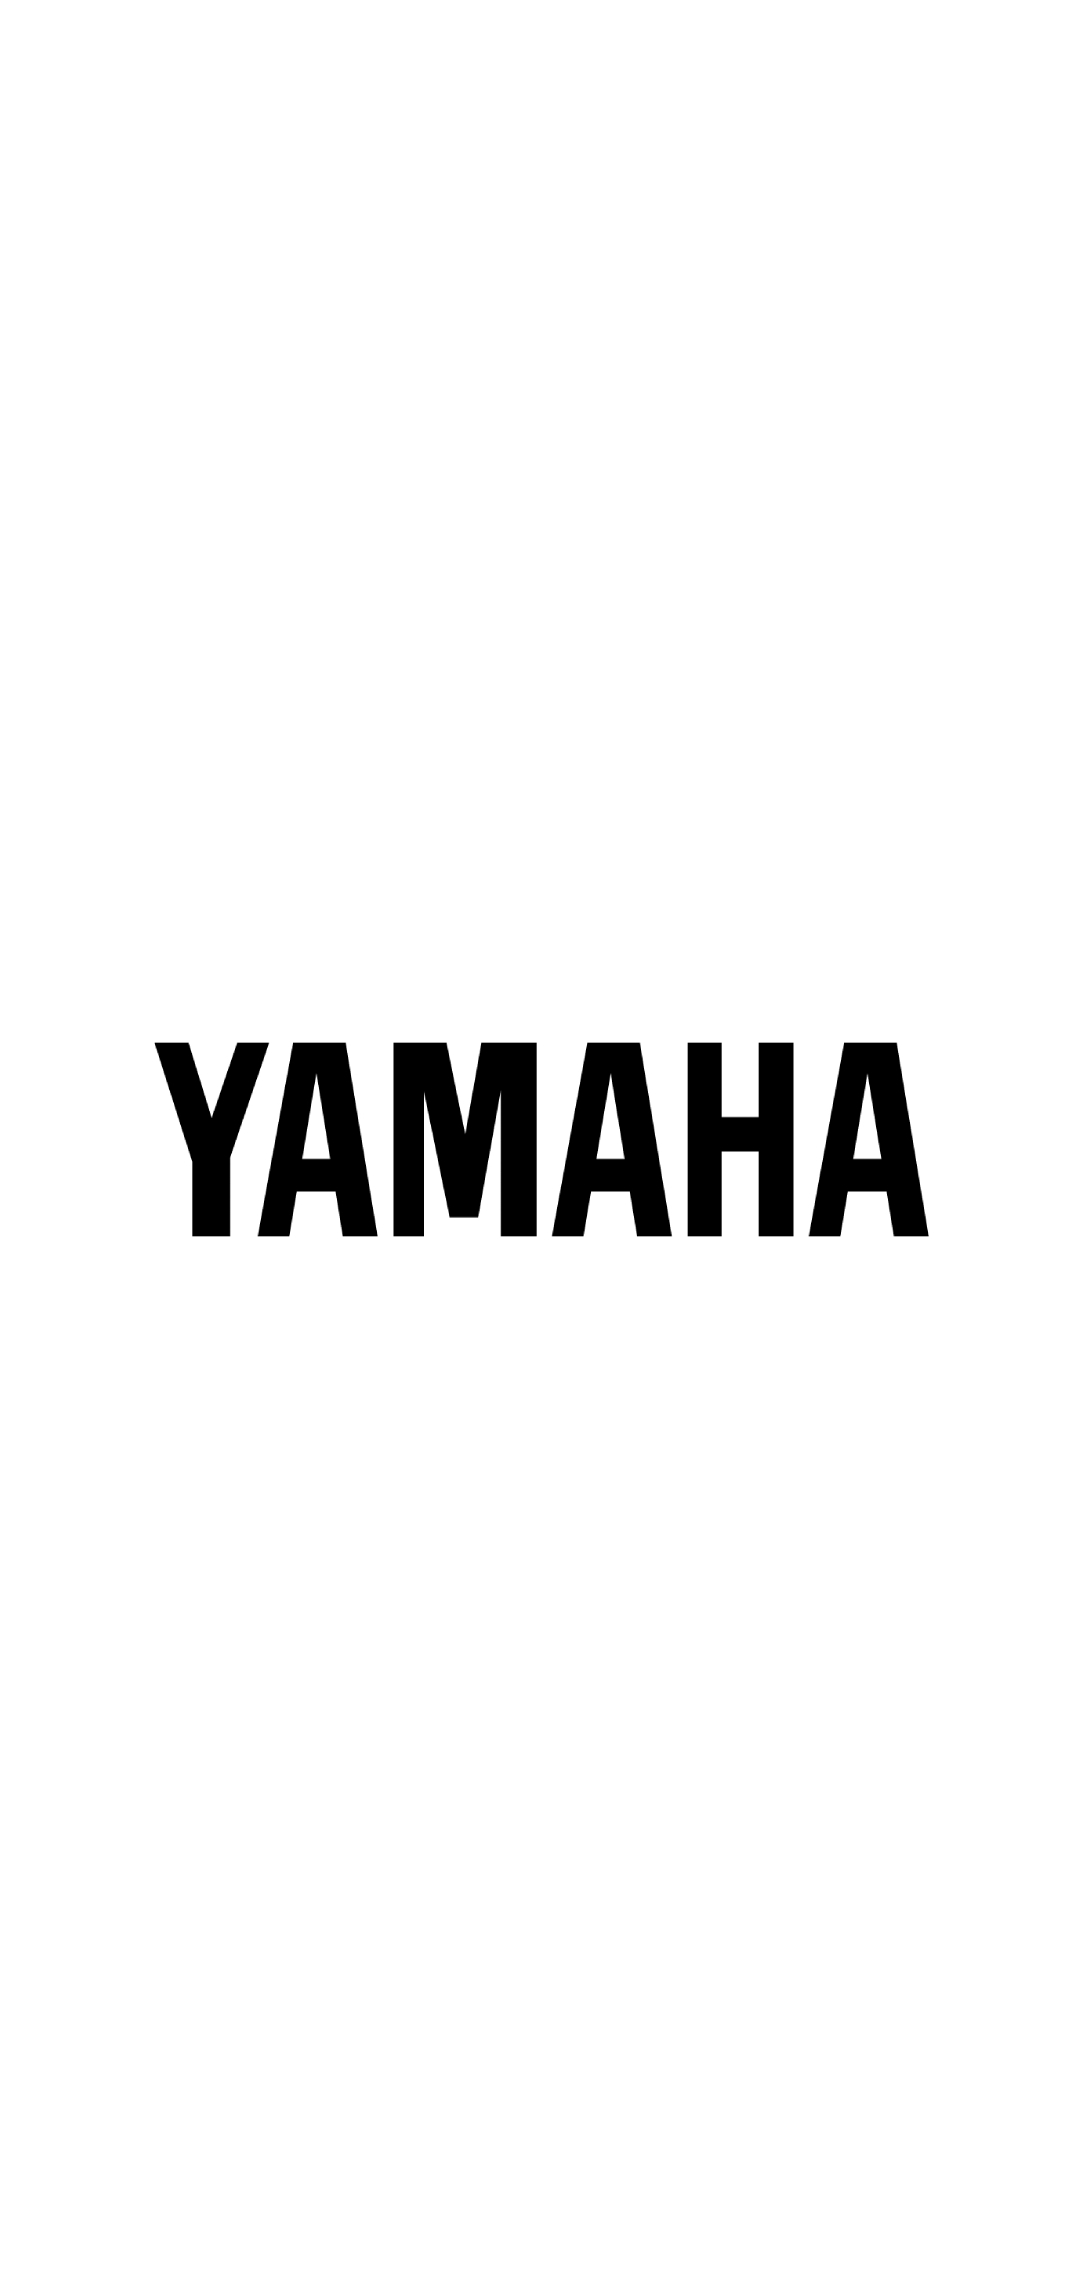 Yamaha ヤマハ Aquos Sense5g 壁紙 待ち受け スマラン